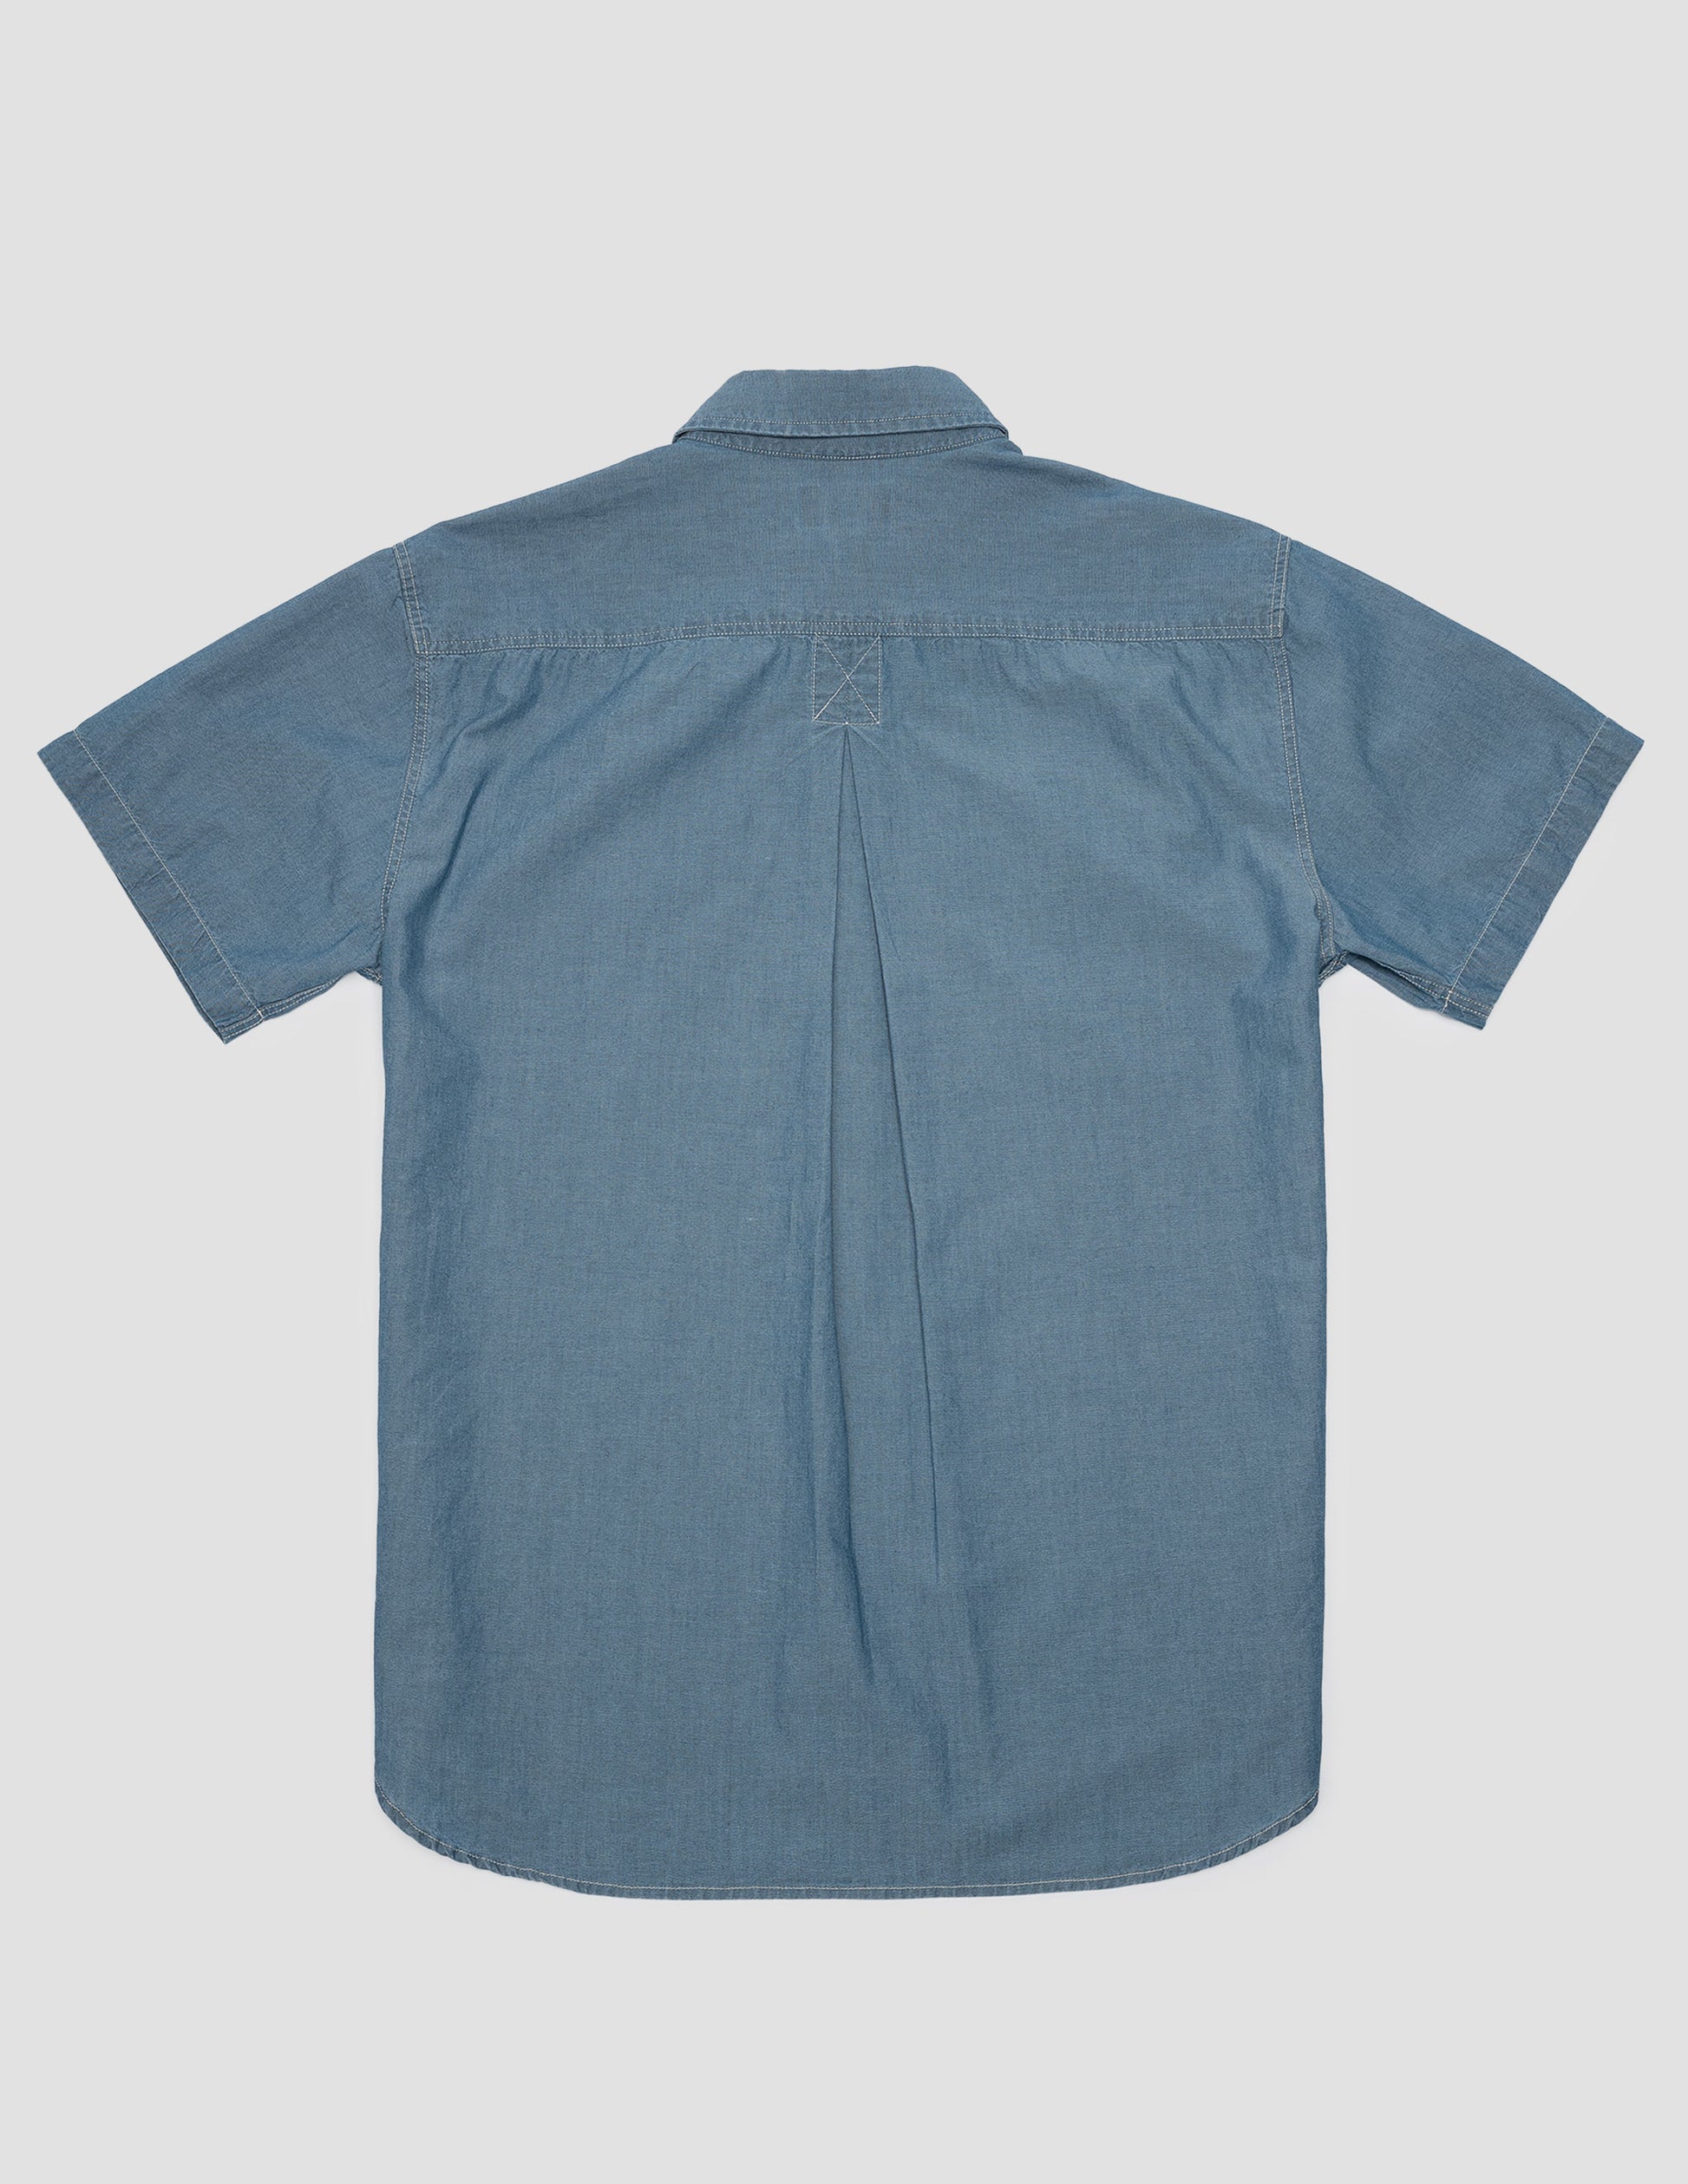 Blue Chambray Shirt